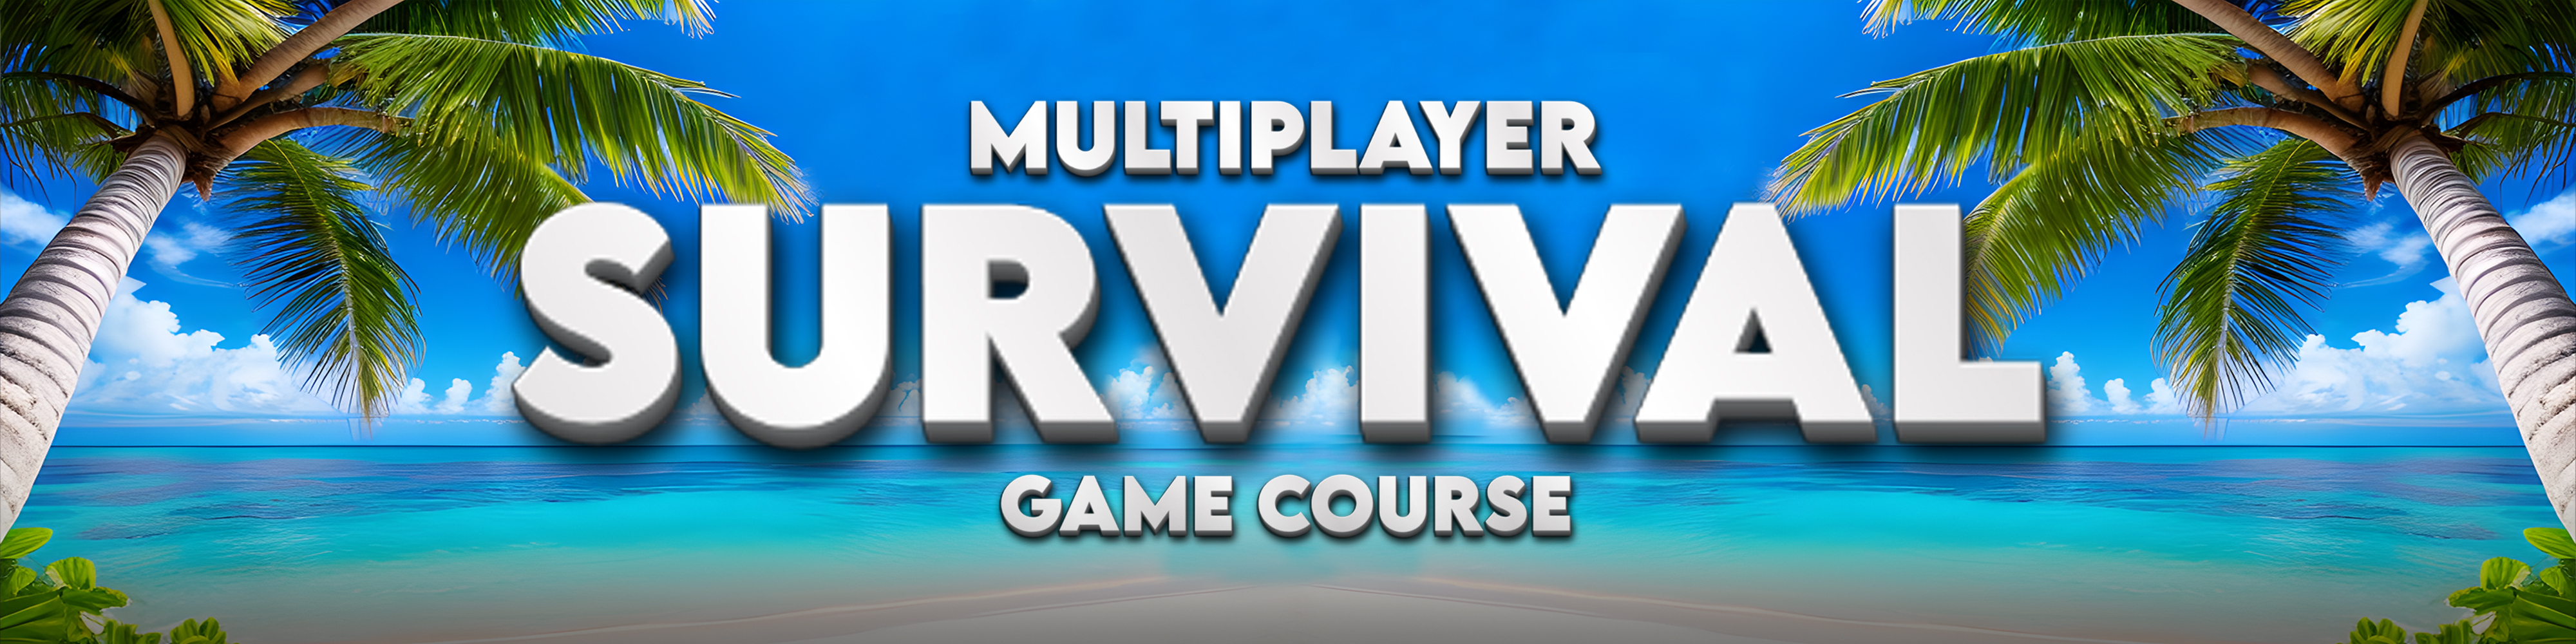 Ultimate Multiplayer Survival Pack V5 in Blueprints - UE Marketplace